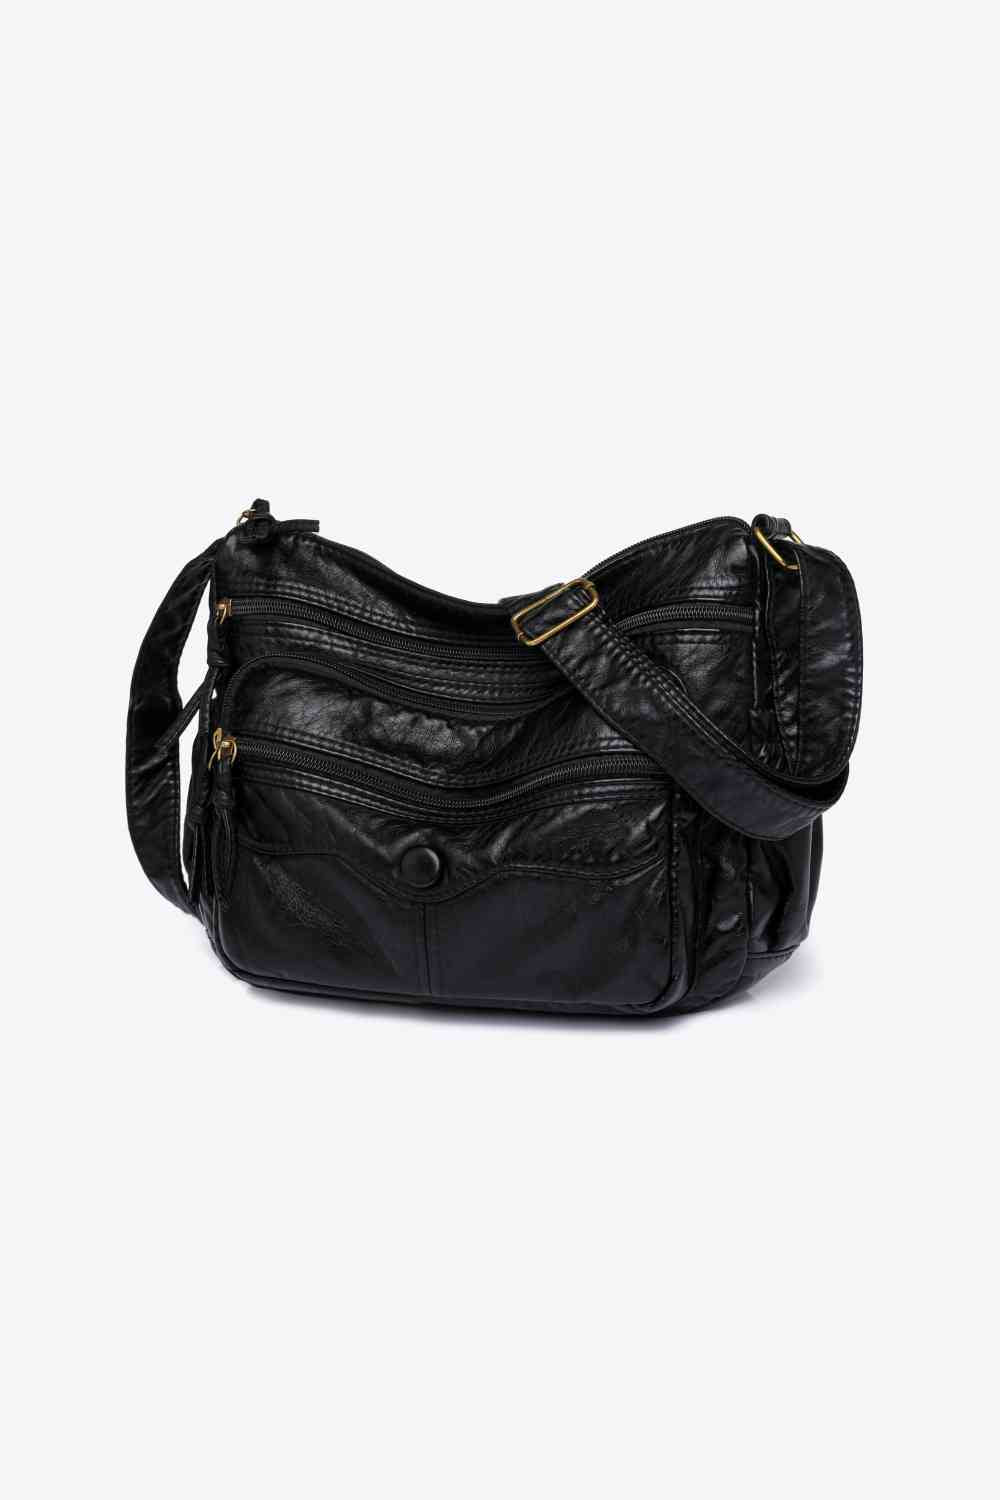 Adored PU Leather Crossbody Bag - TRENDMELO